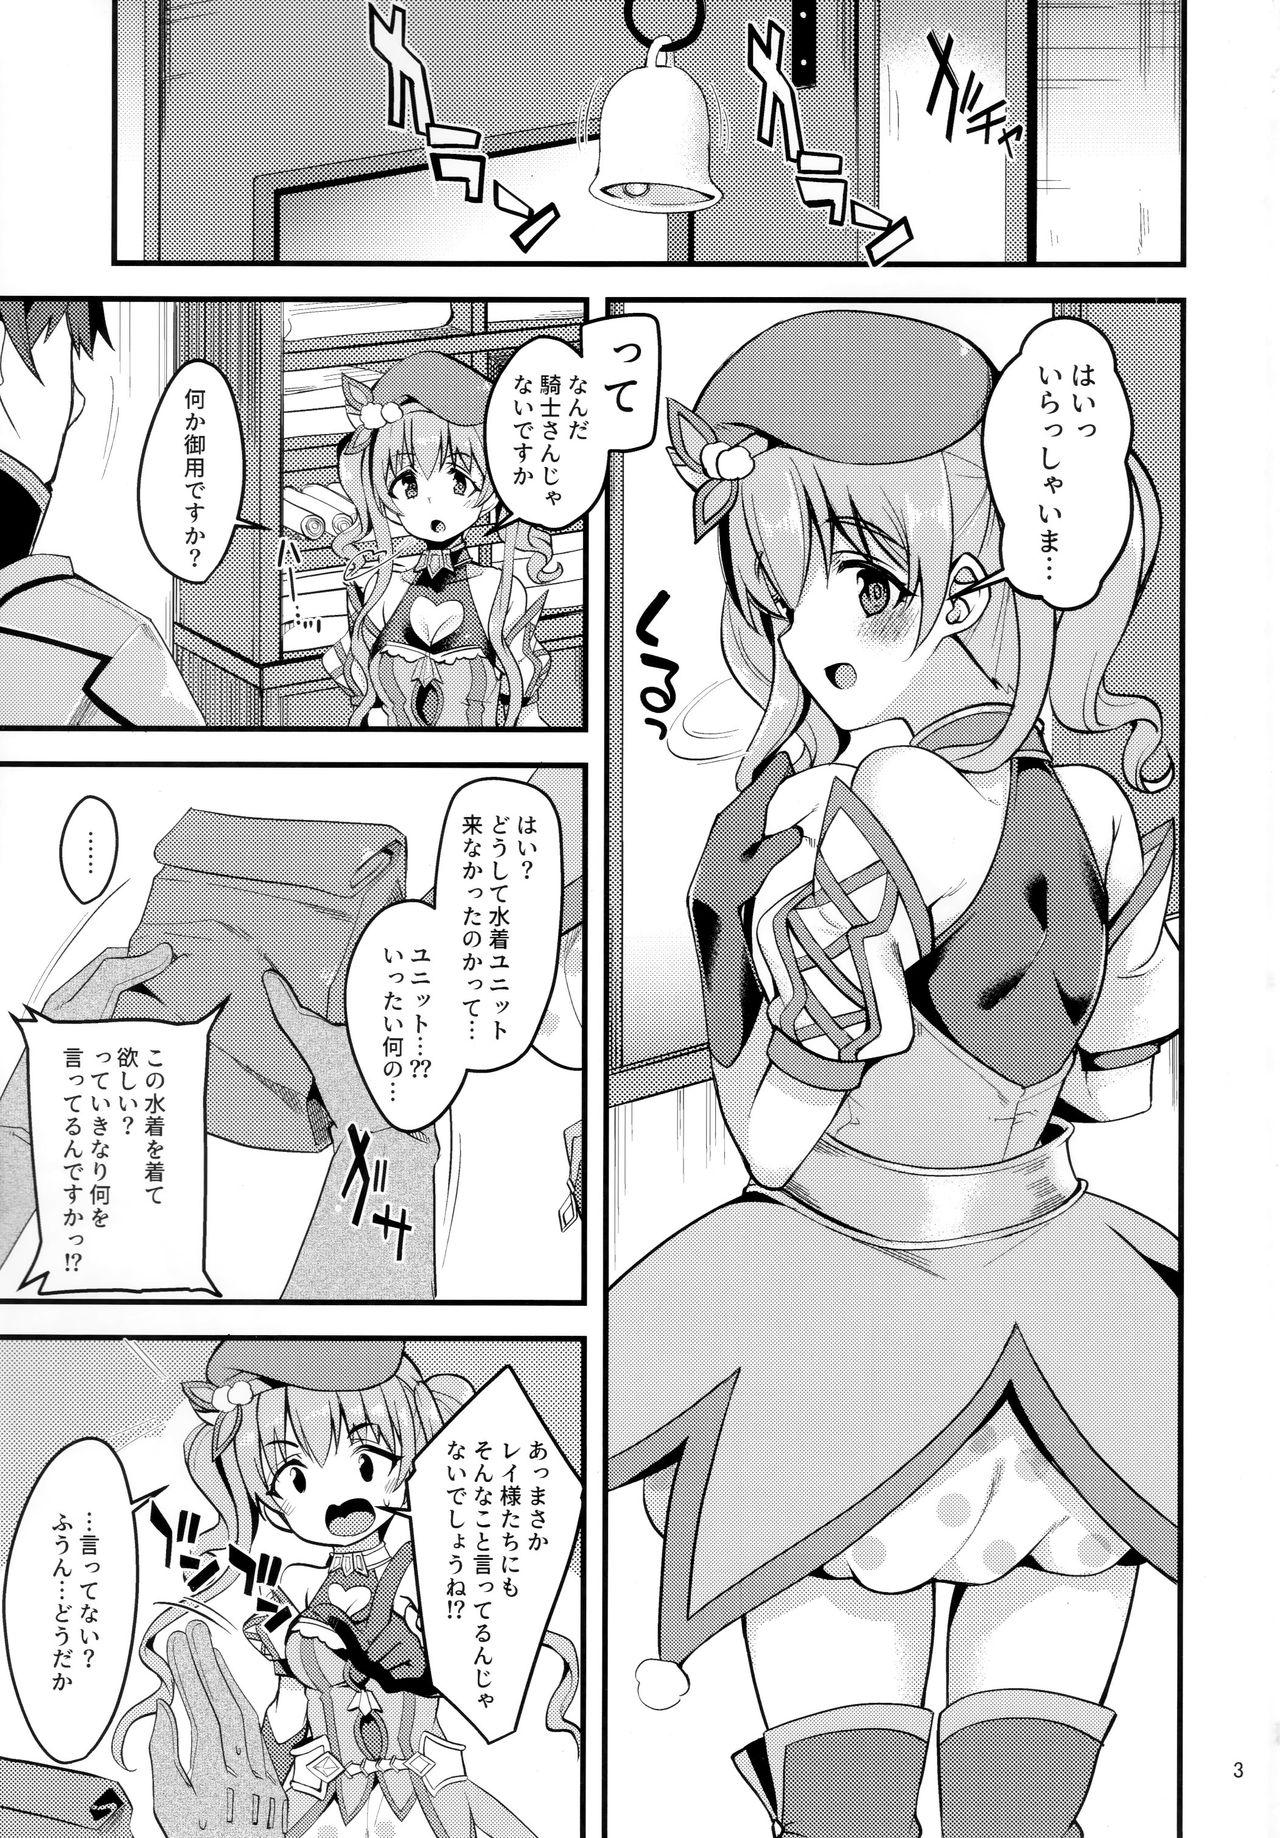 Behind Tsumugi Make Heroine Move!! 02 - Princess connect Travesti - Page 2